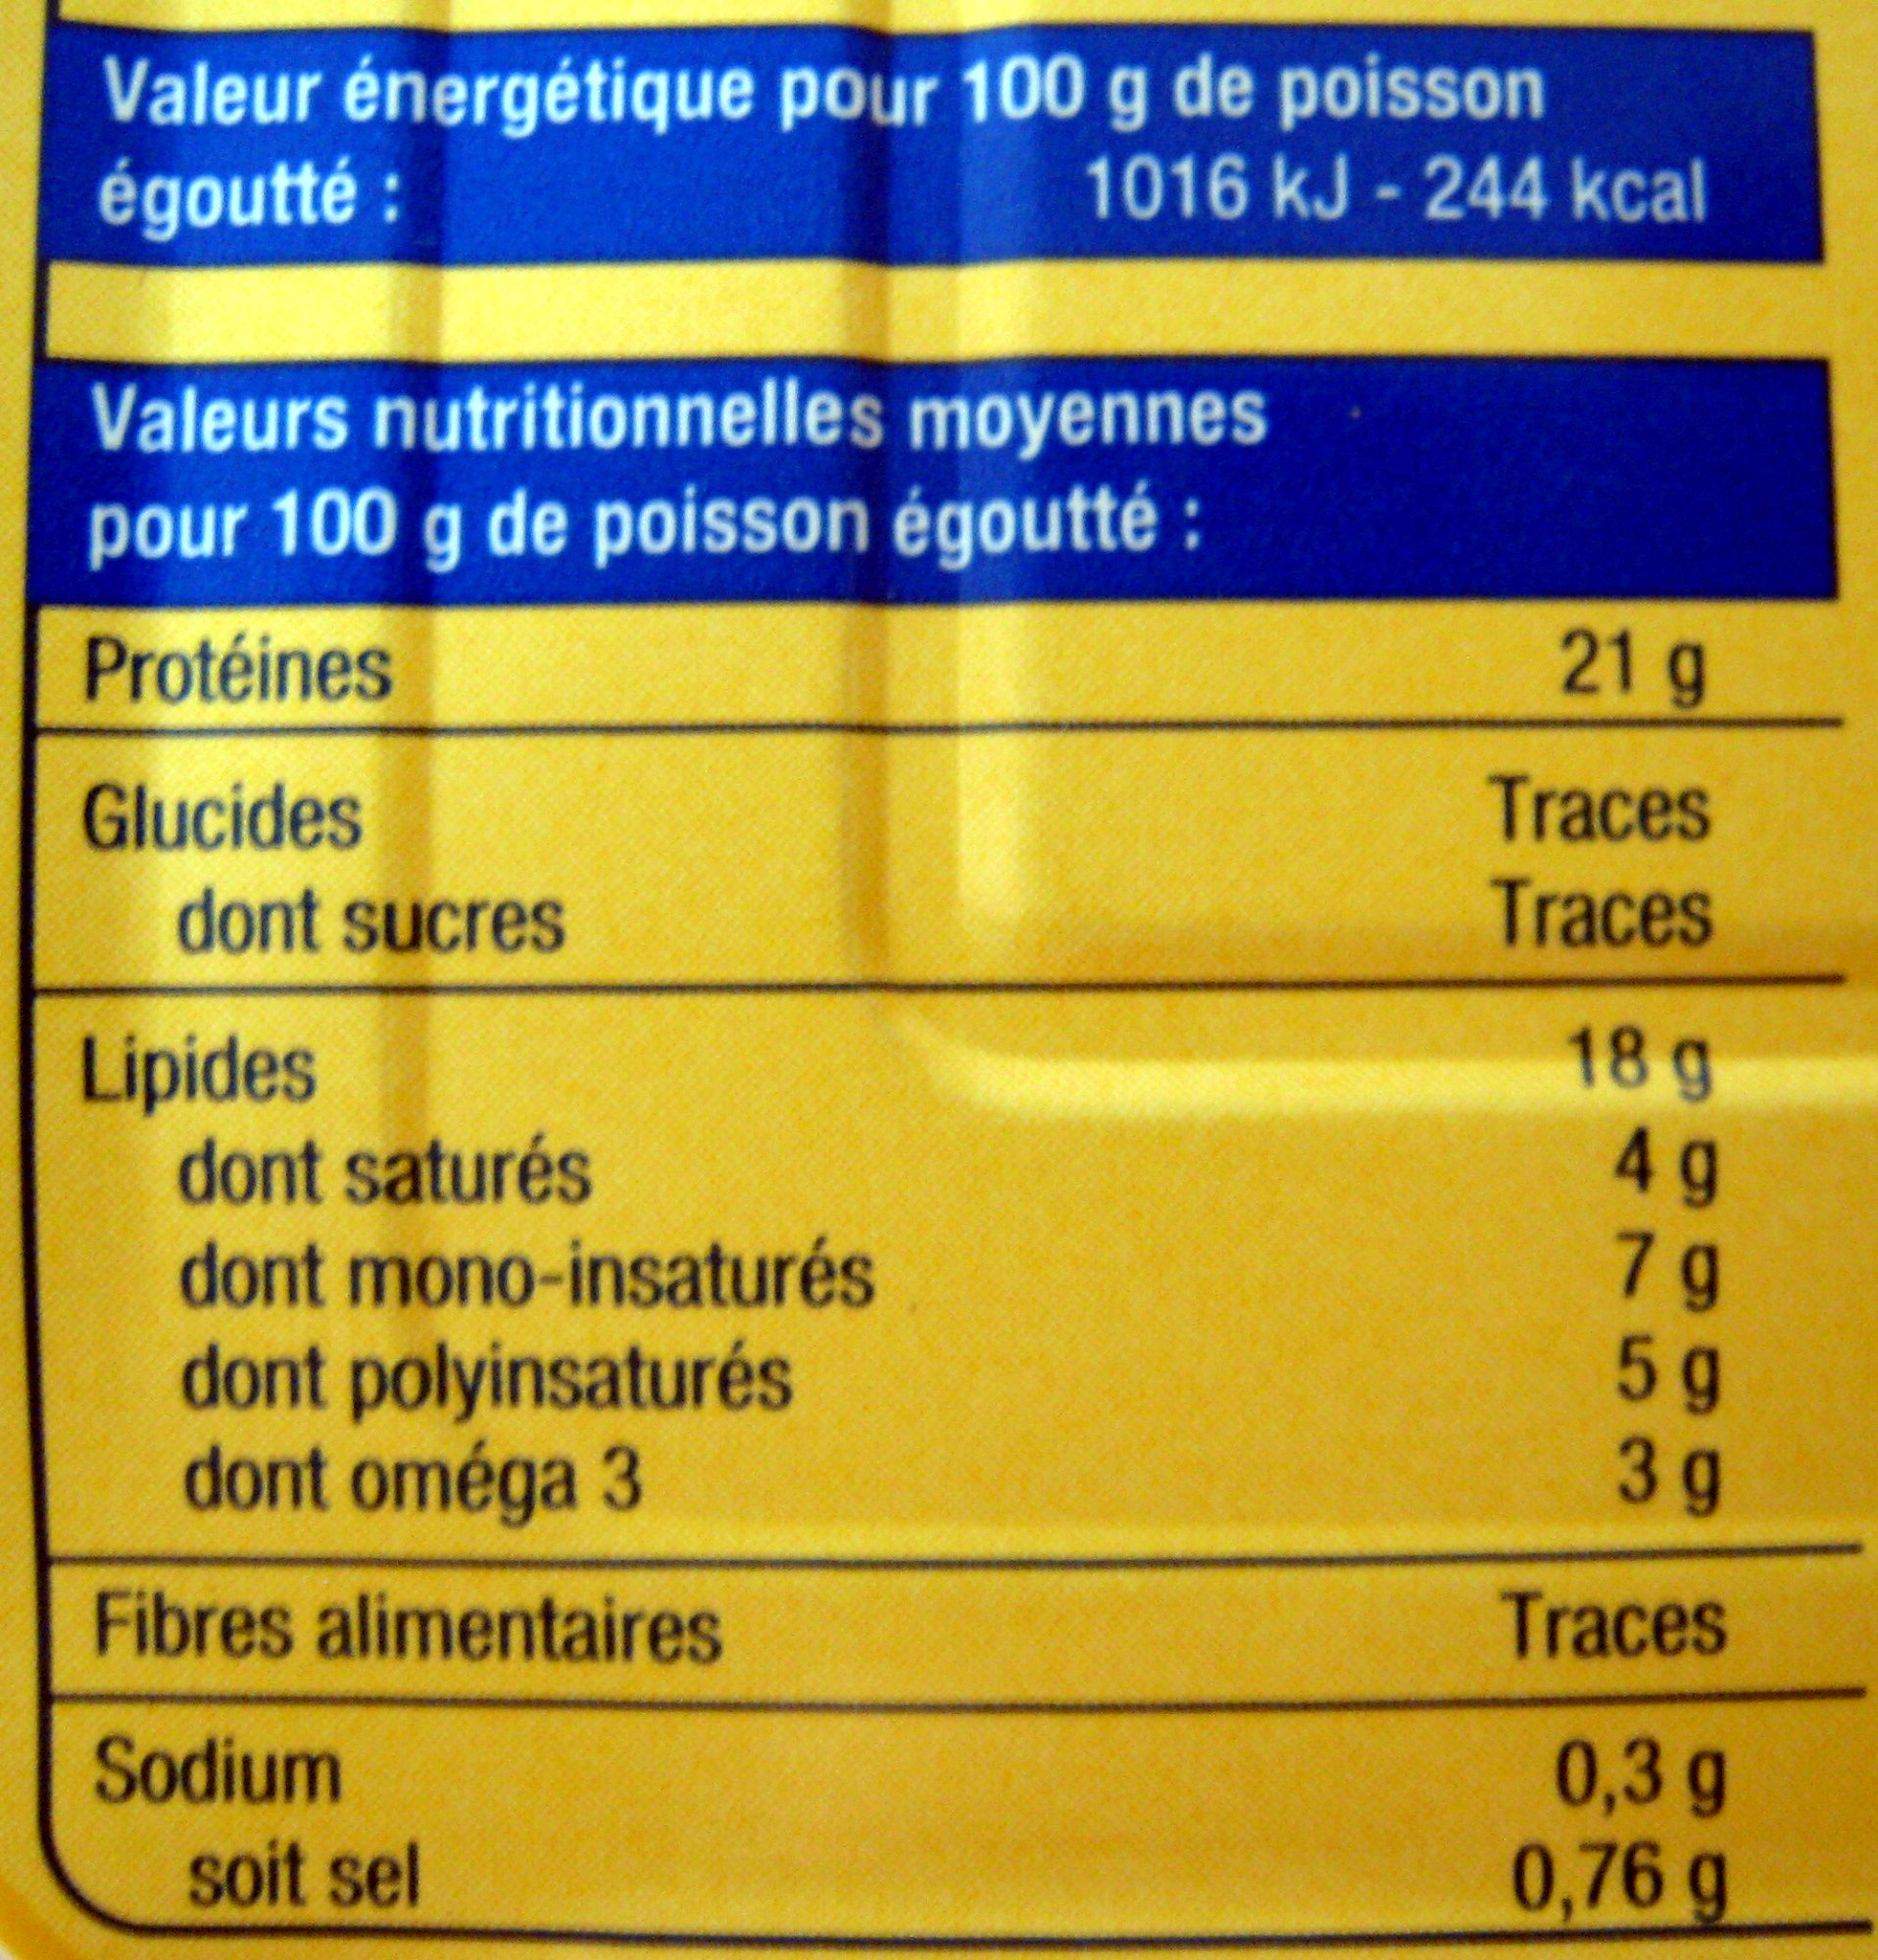 Filets de sardines aux 3 huiles végétales - Nutrition facts - fr